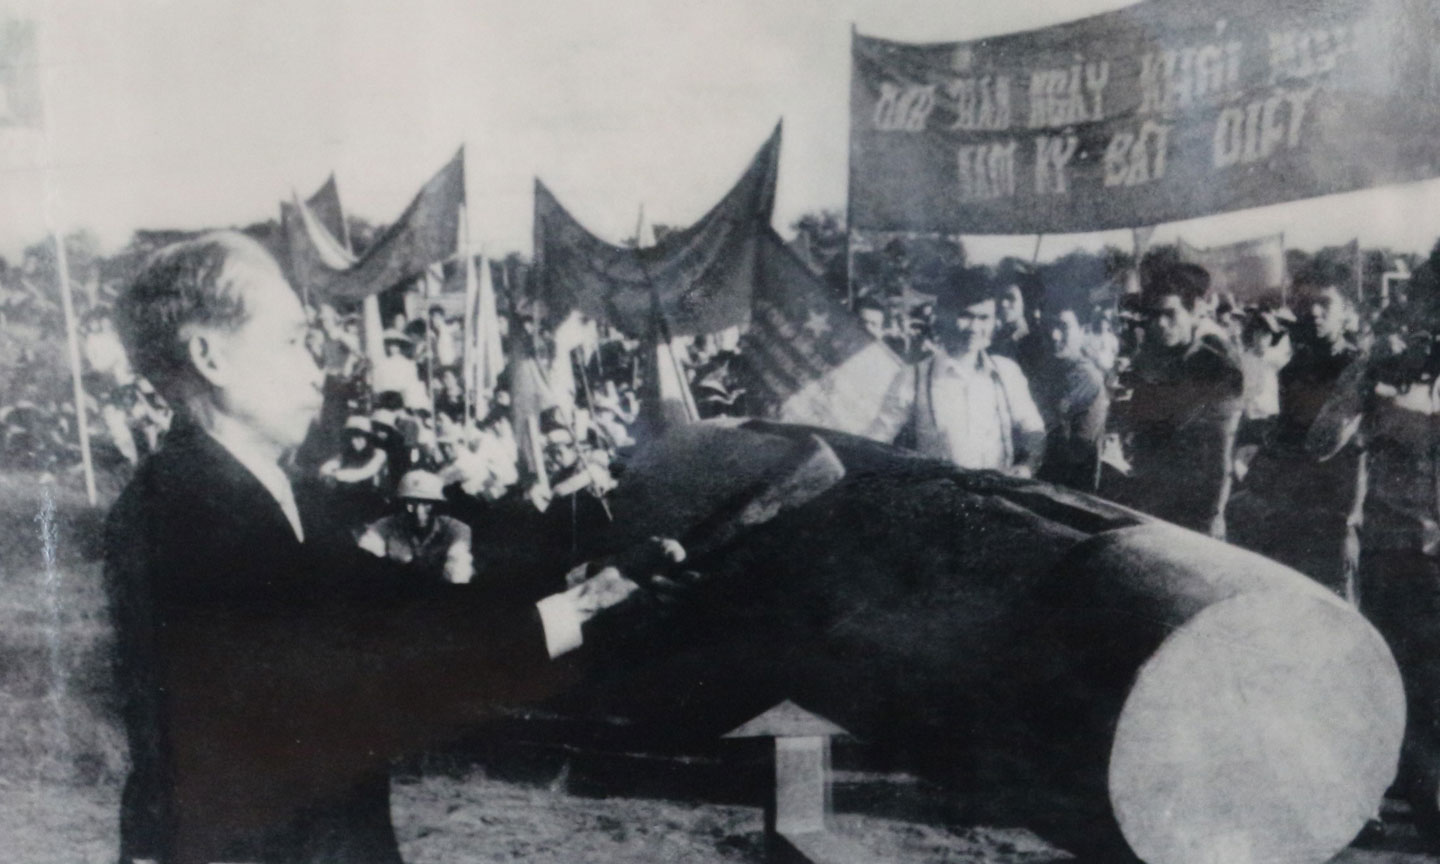 Đồng chí Nguyễn Văn Trọng, Phó Bí thư Tỉnh ủy Mỹ Tho đánh mõ truyền thống nhân kỷ niệm 39 năm ngày Nam kỳ khởi nghĩa tổ chức tại Tiền Giang (23-11-1940 – 23-11-1979).